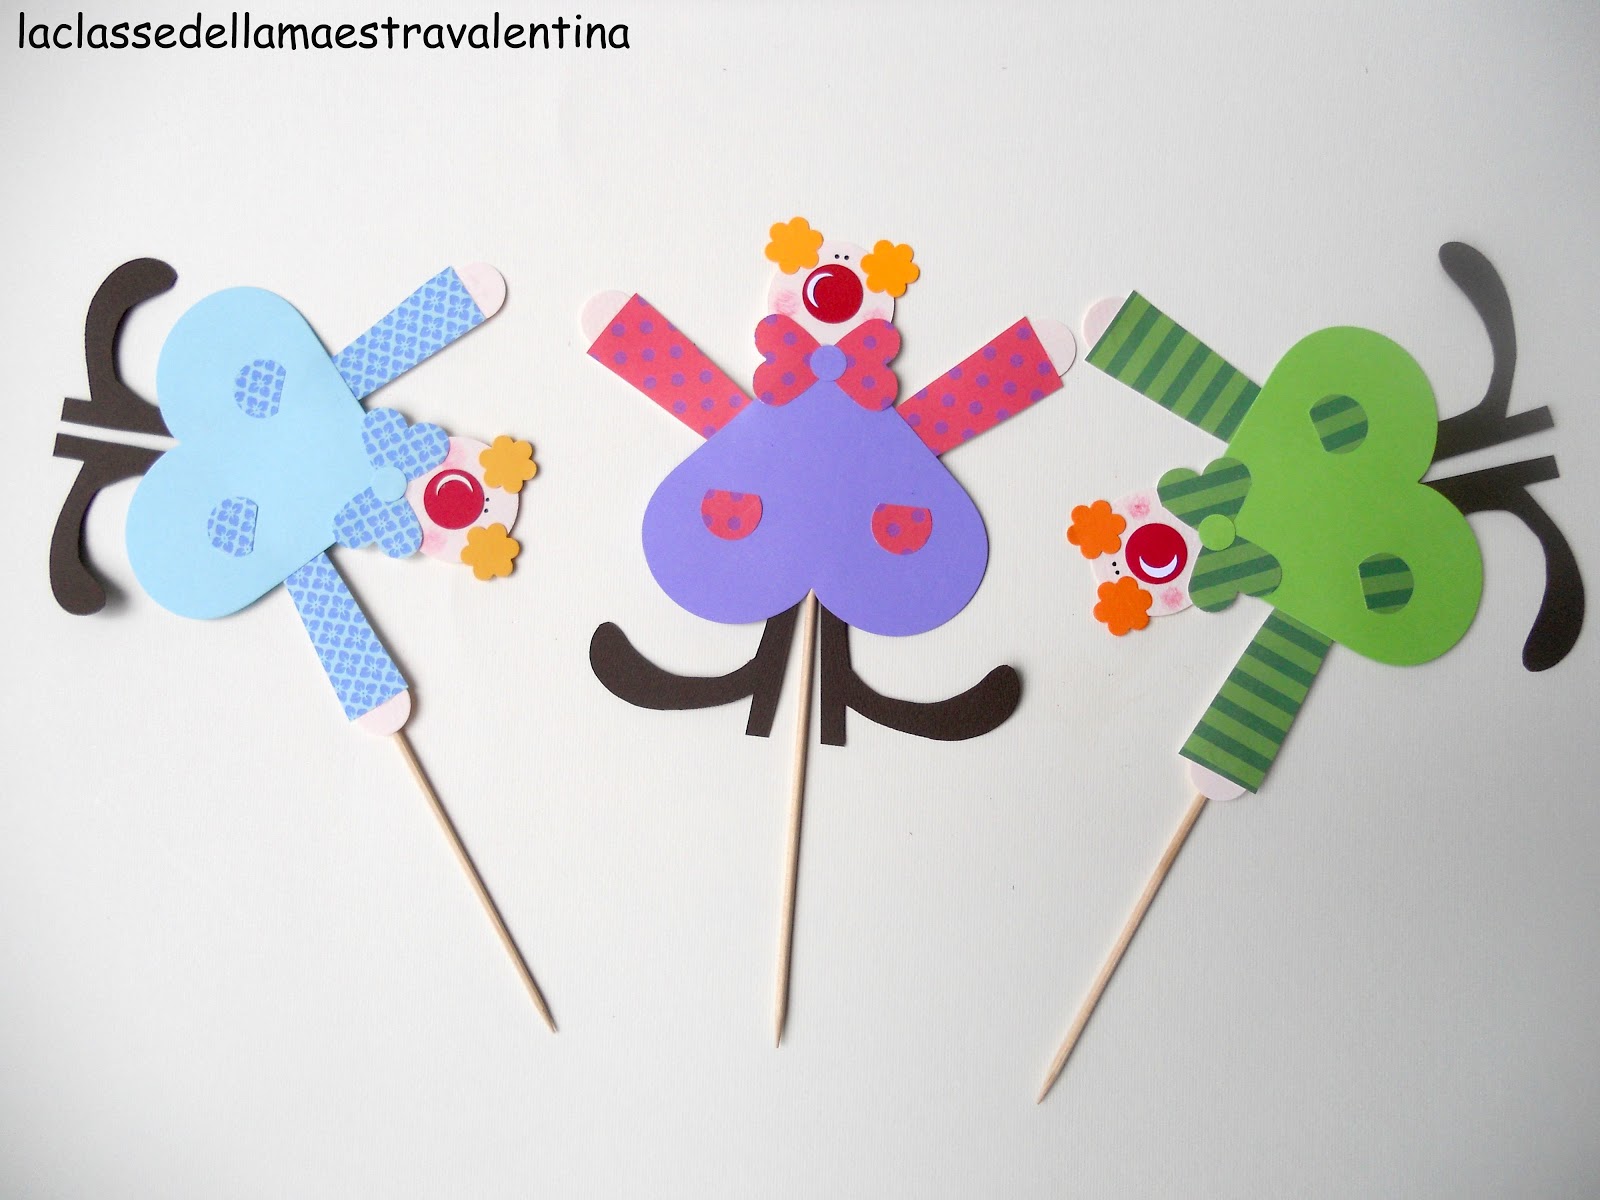 “disegni da colorare delle maschere di carnevale dei pandini” idee per una festicciola di carnevale La classe della maestra Valentina IDEE PER UNA